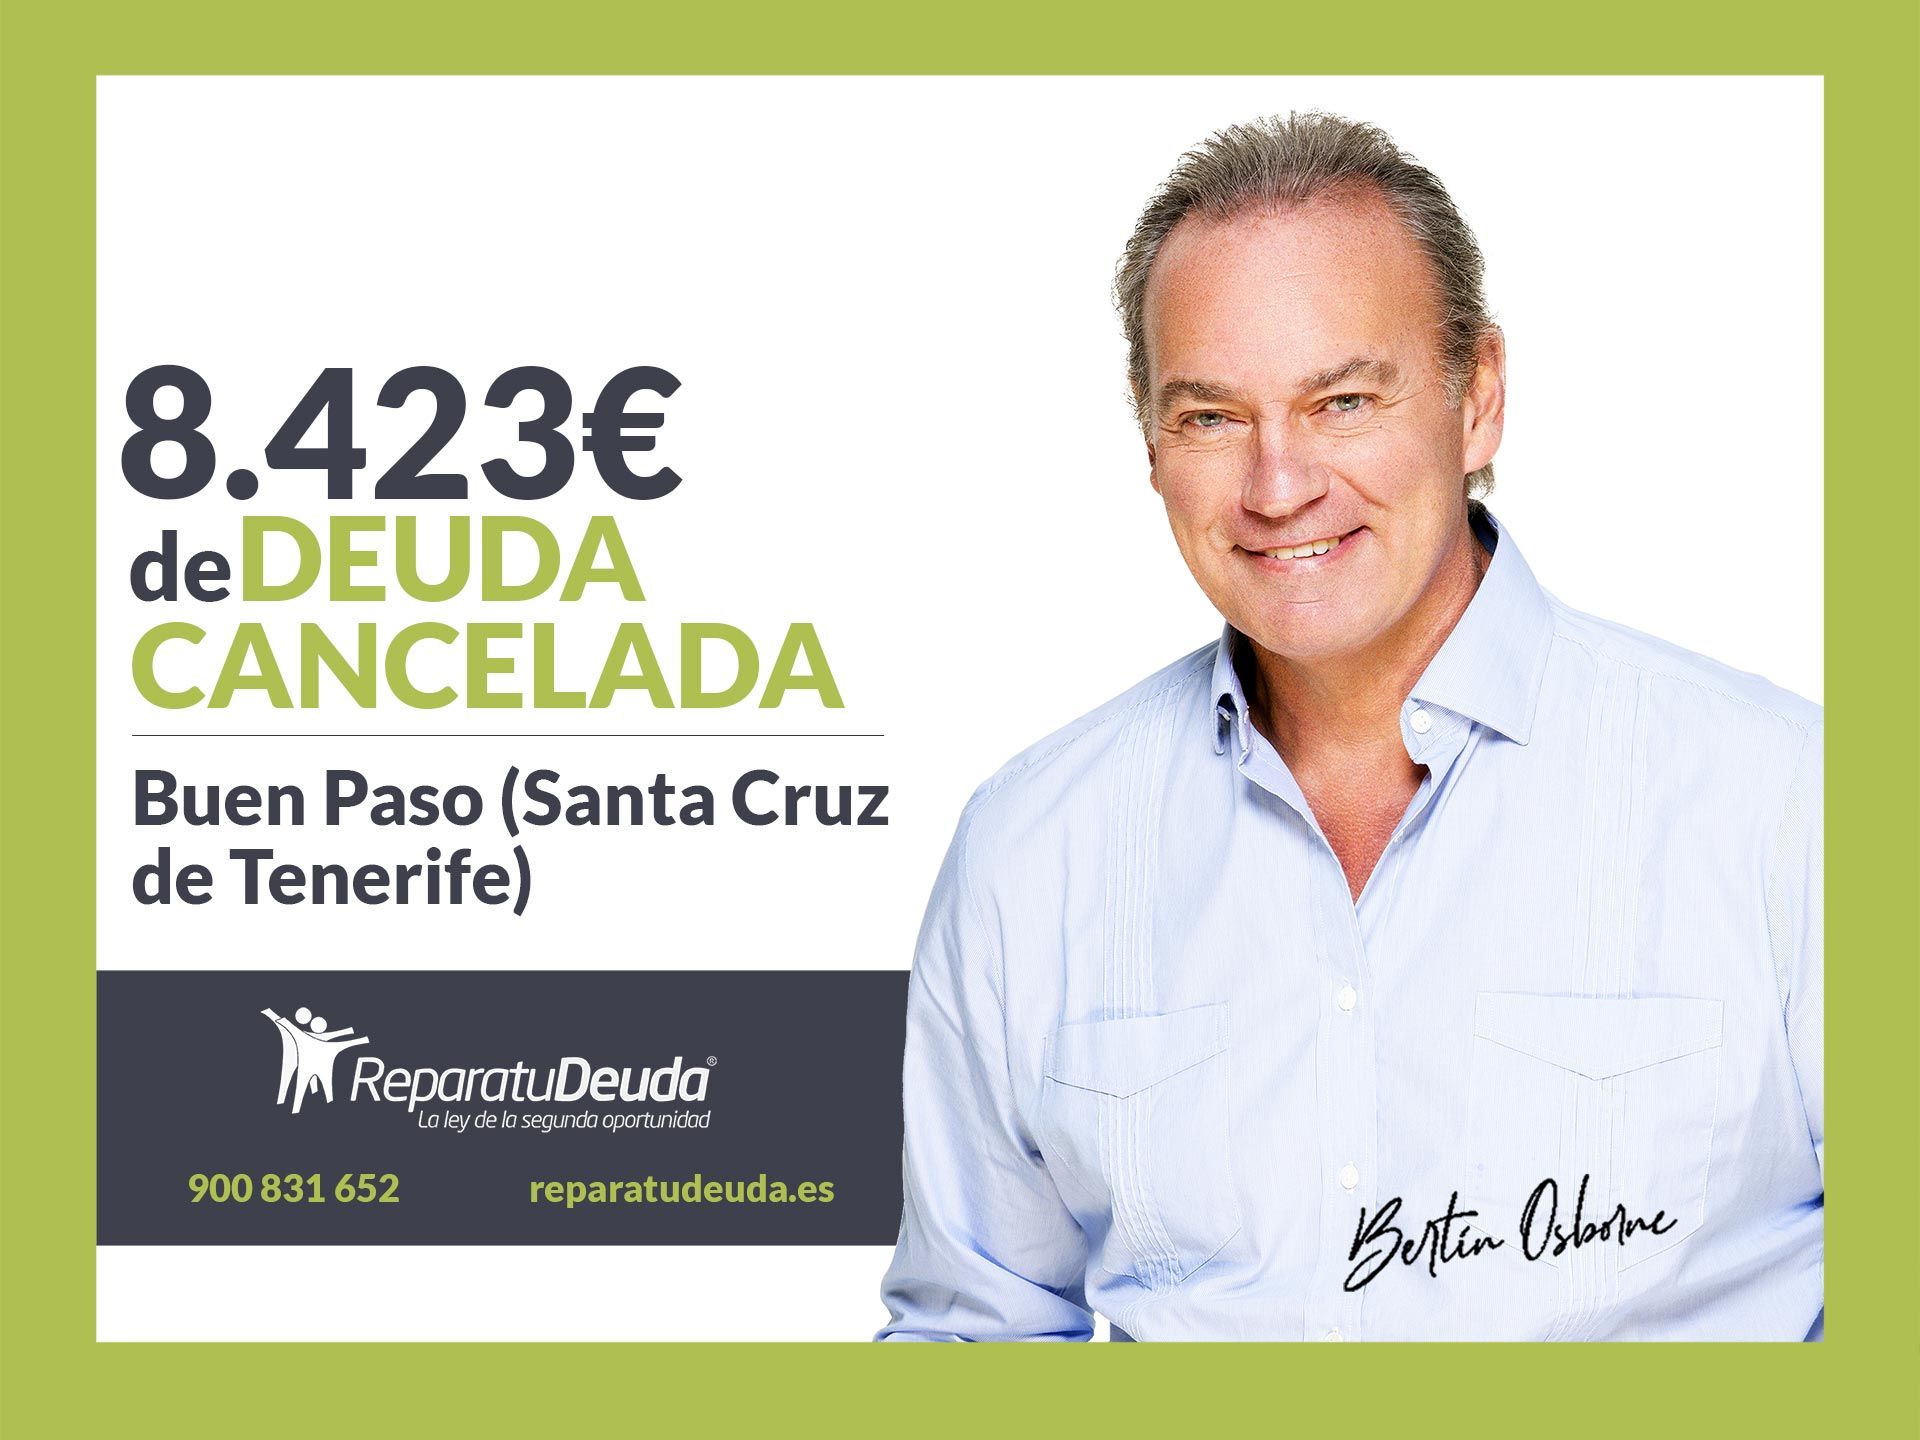 Repara tu Deuda Abogados cancela 8.423 ? en Buen Paso (Santa Cruz de Tenerife) con la Ley de la Segunda Oportunidad